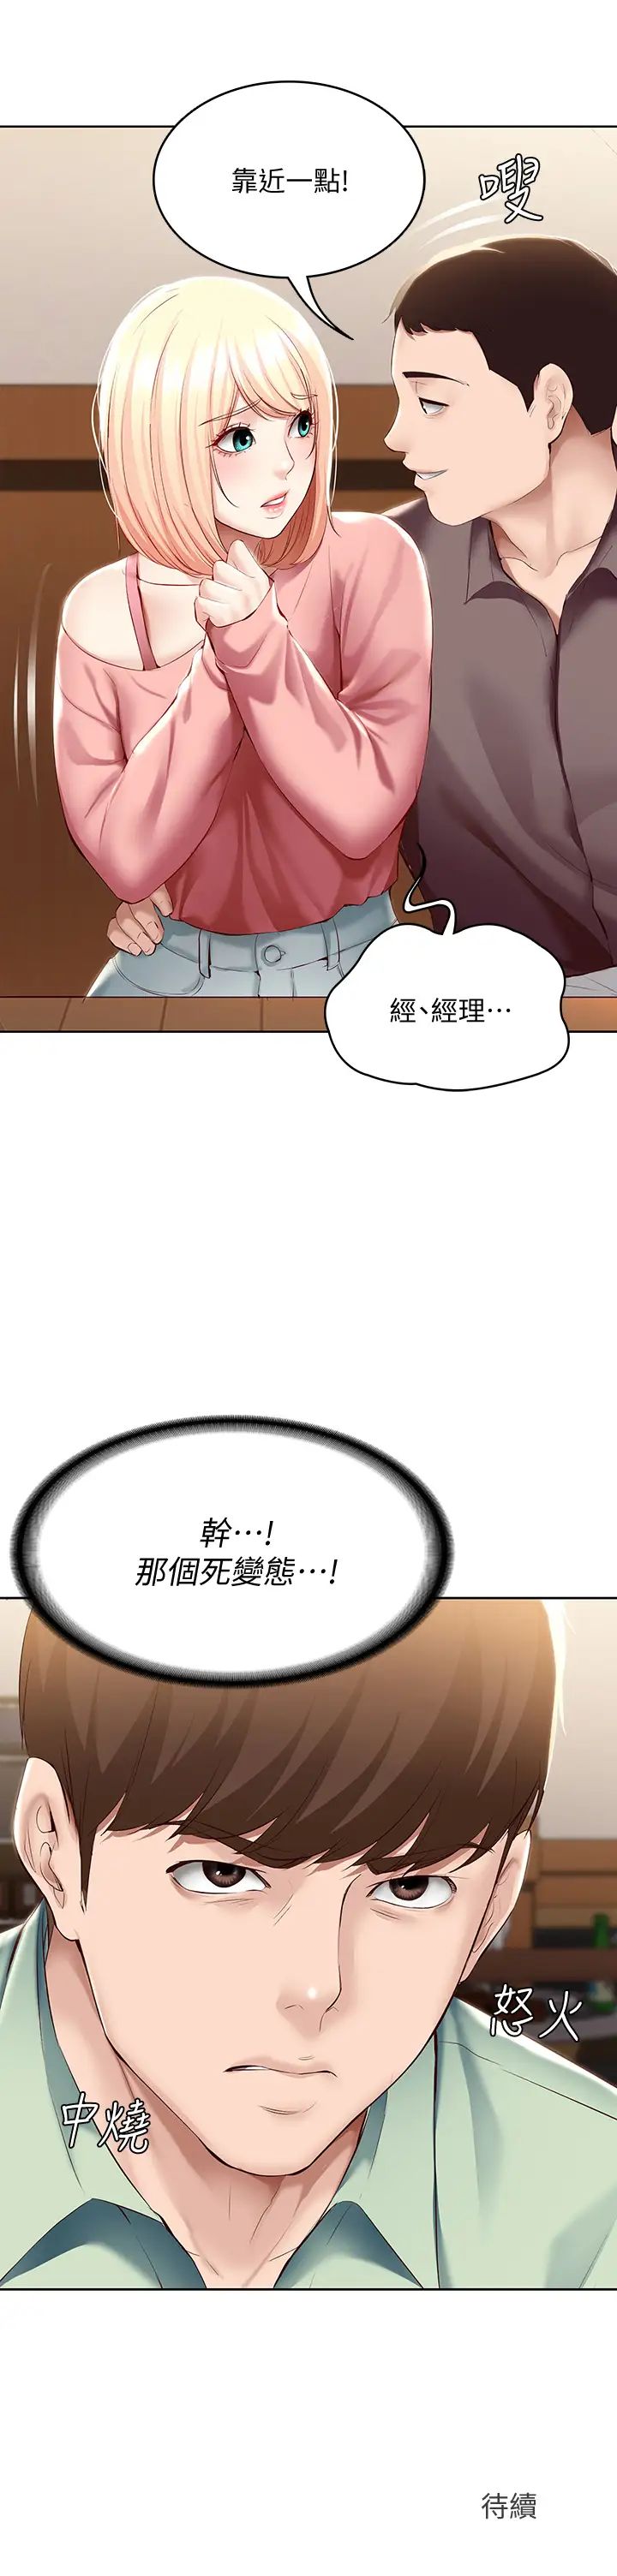 韩国污漫画 寄宿日記 第62话培琳可口的酥胸 43